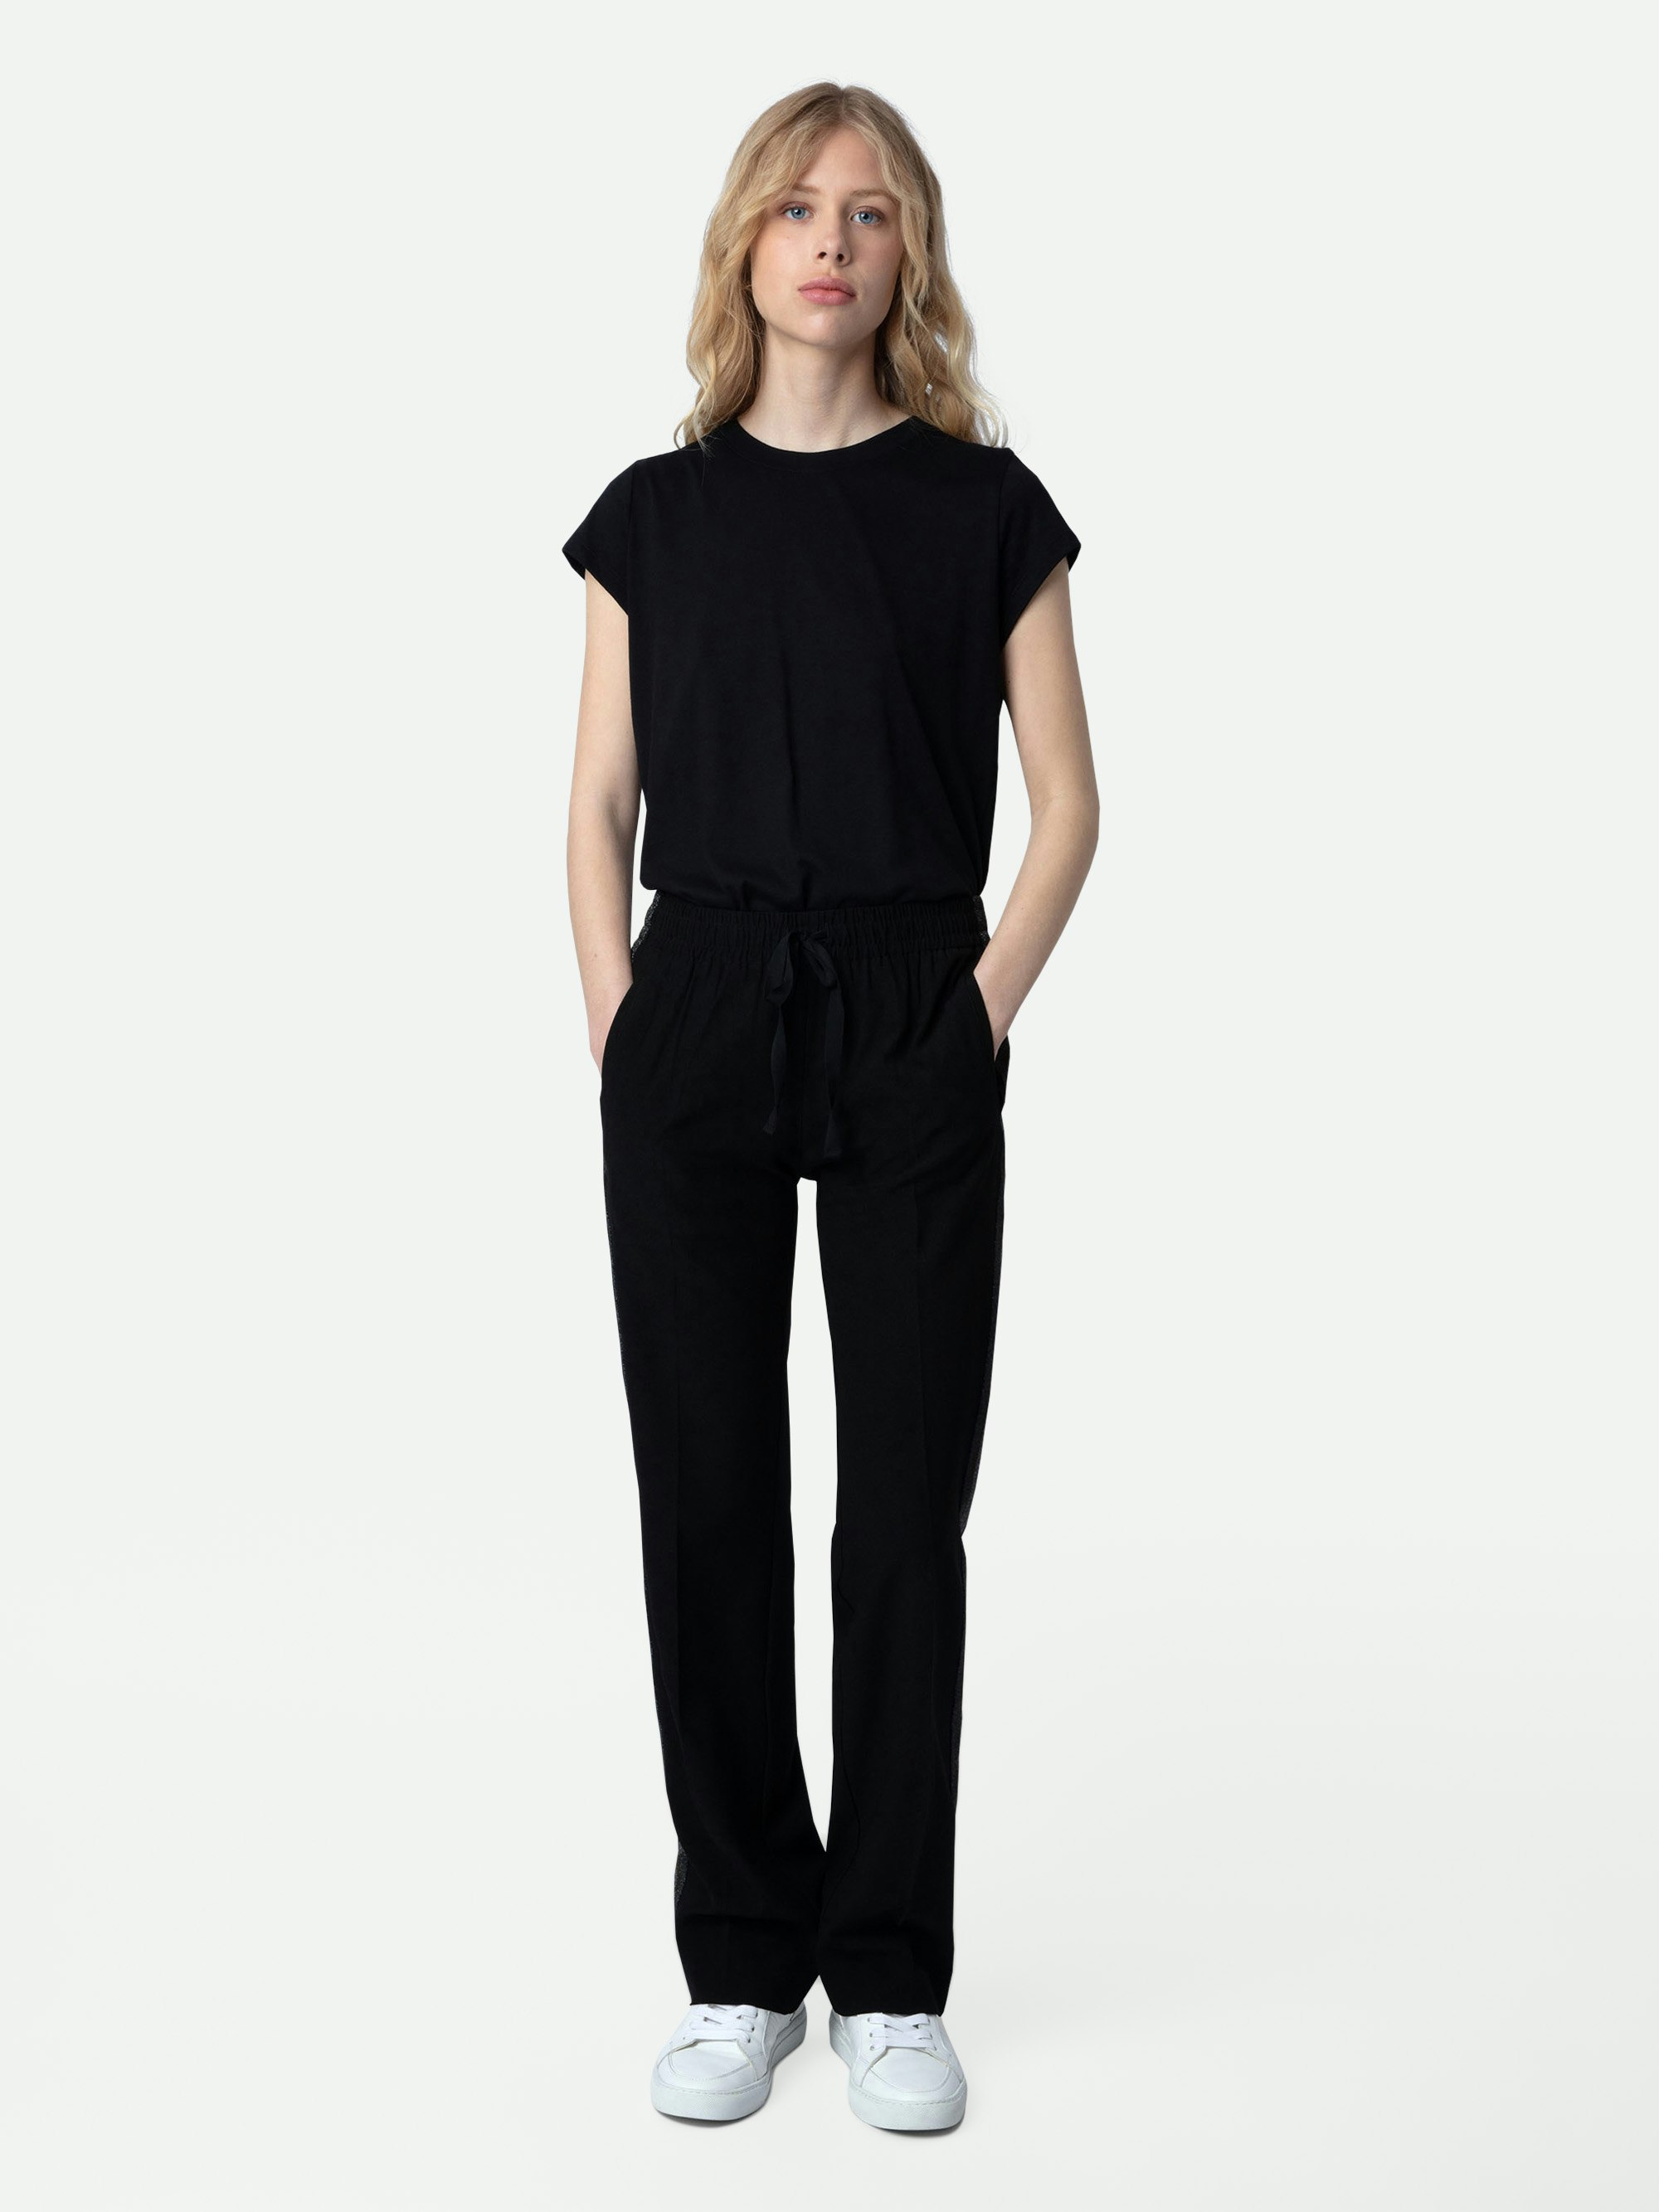 Pantalón Pomy - Pantalón negro para mujer con bandas laterales de purpurina